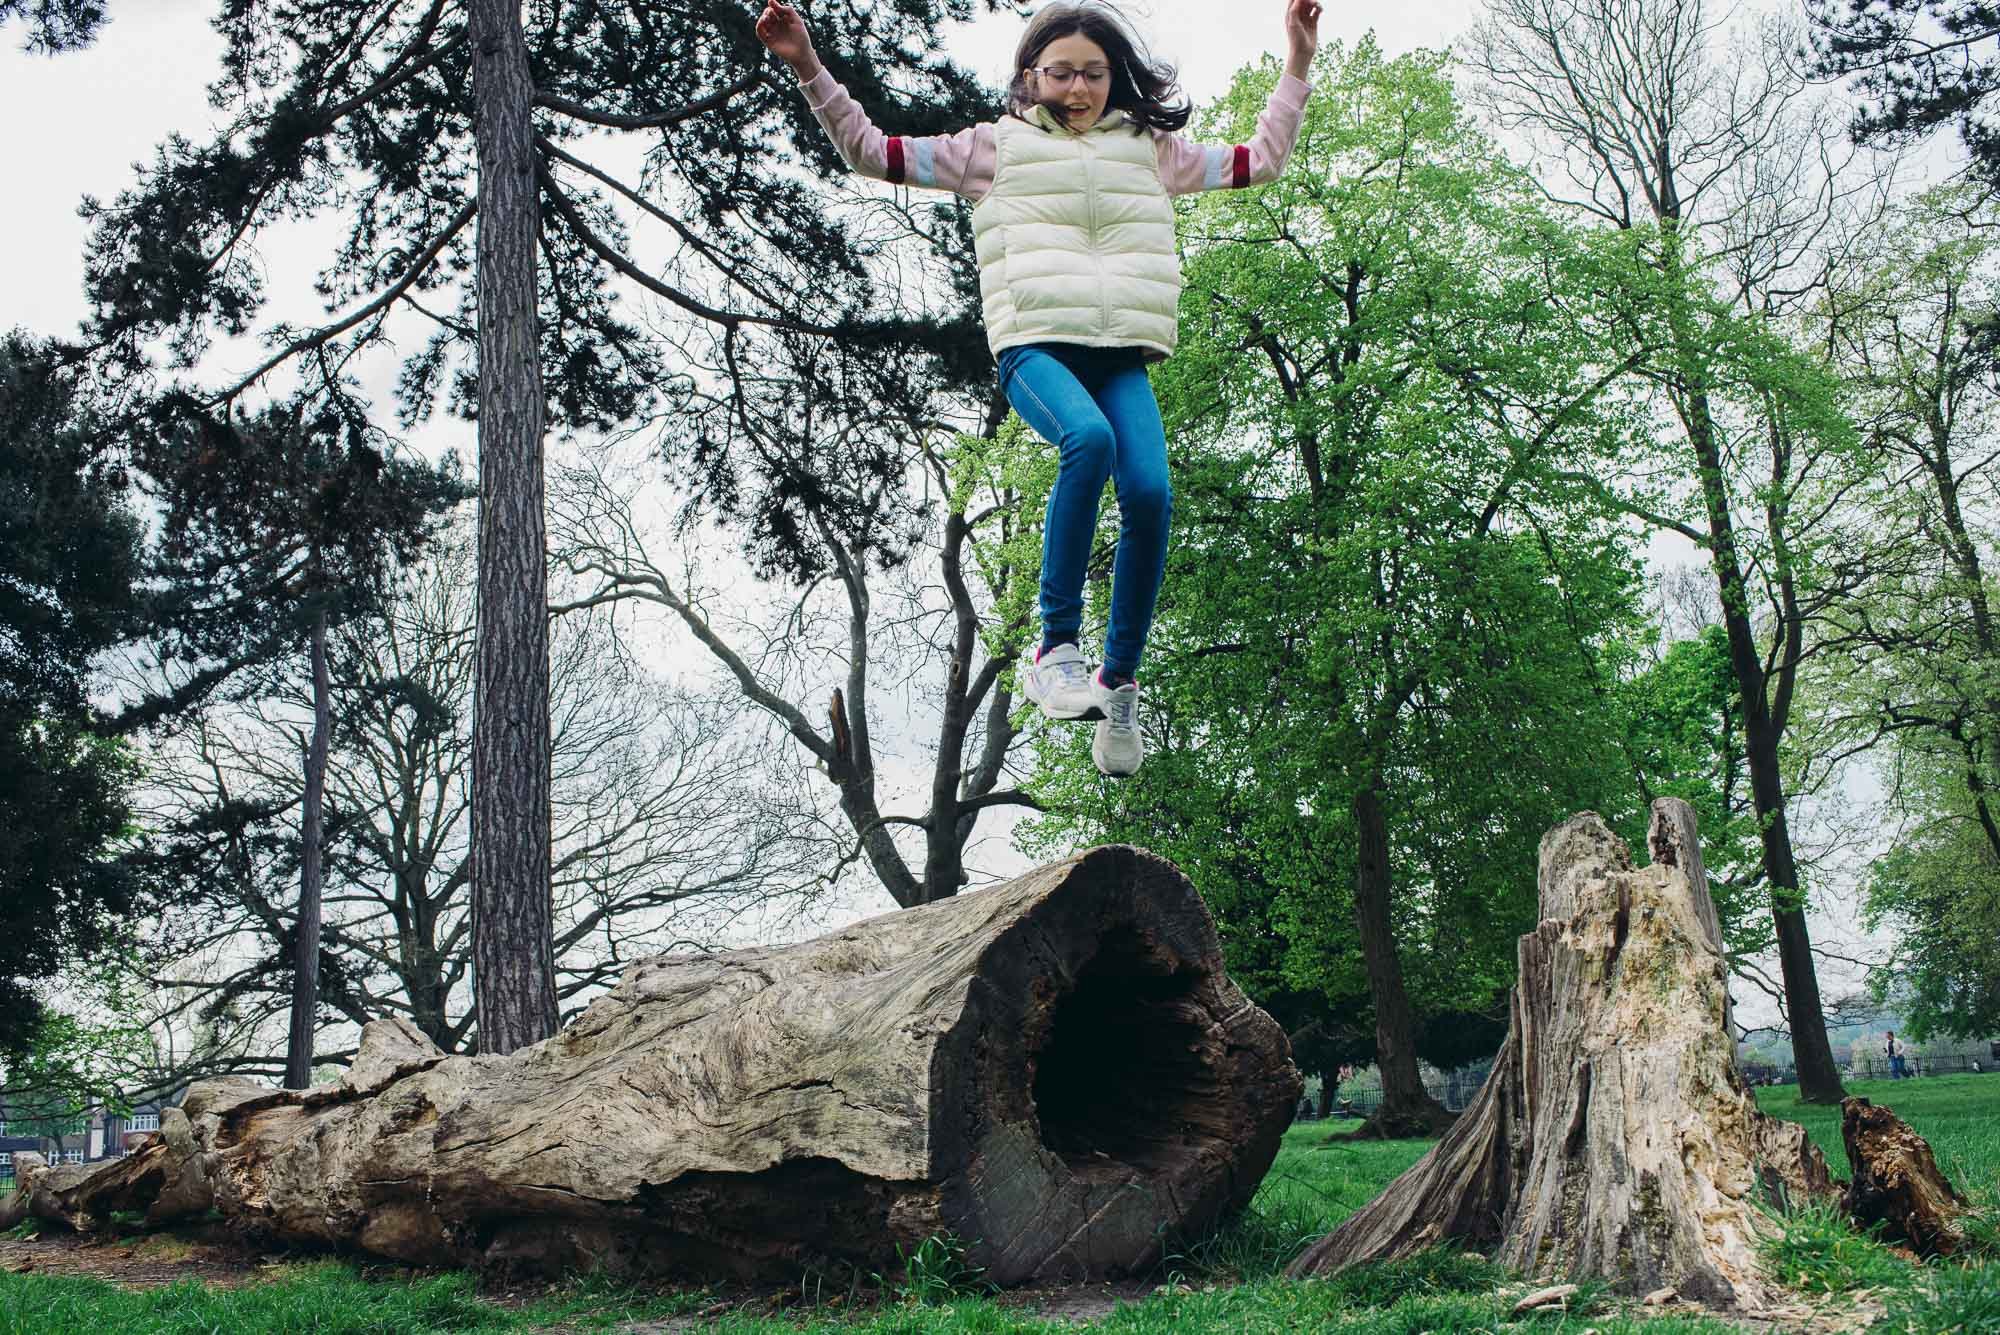 girl-jumping-off-log-peckham-rye-park-london-family-photographer-children-photography-documentary-style.jpg